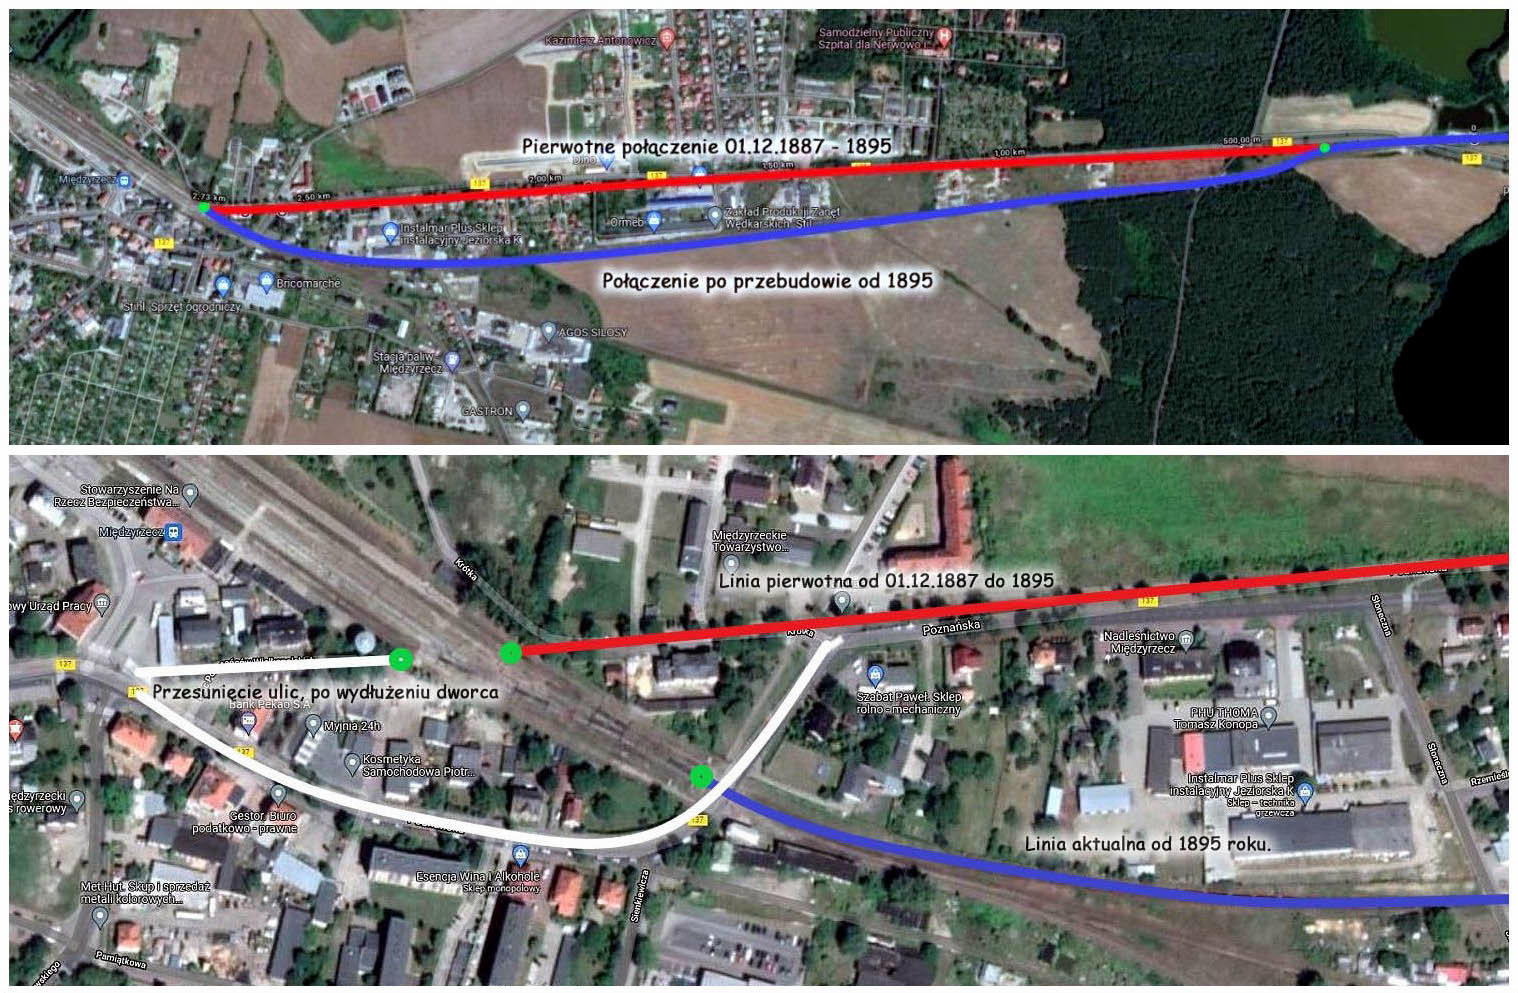 W latach 1987 - 1895 tor z Wierzbna, łączył się ze stacją Międzyrzecz od strony wschodniej, na wysokości południowej częsci torów stacyjnych. W 1895 roku, rozbudowa dworca wymagała "wejścia" linią kolejową od południowego wschodu, co wymagało obniżenia szlaku, żeby dłuższym, delikatniejszym łukiem "wpiąć" się w torowisko dworca w Międzyrzeczu. Poniżej przybliżone połączenie obu wersji linii z Wierzbna do Międzyrzecza, oraz związana z tym przebudowa ulic, niezbędna przy wydłużeniu torowiska stacii, przygotowywanego do planowaego włączenia linii z Toporowa, którą oddano w dniu 01.08.1909. 